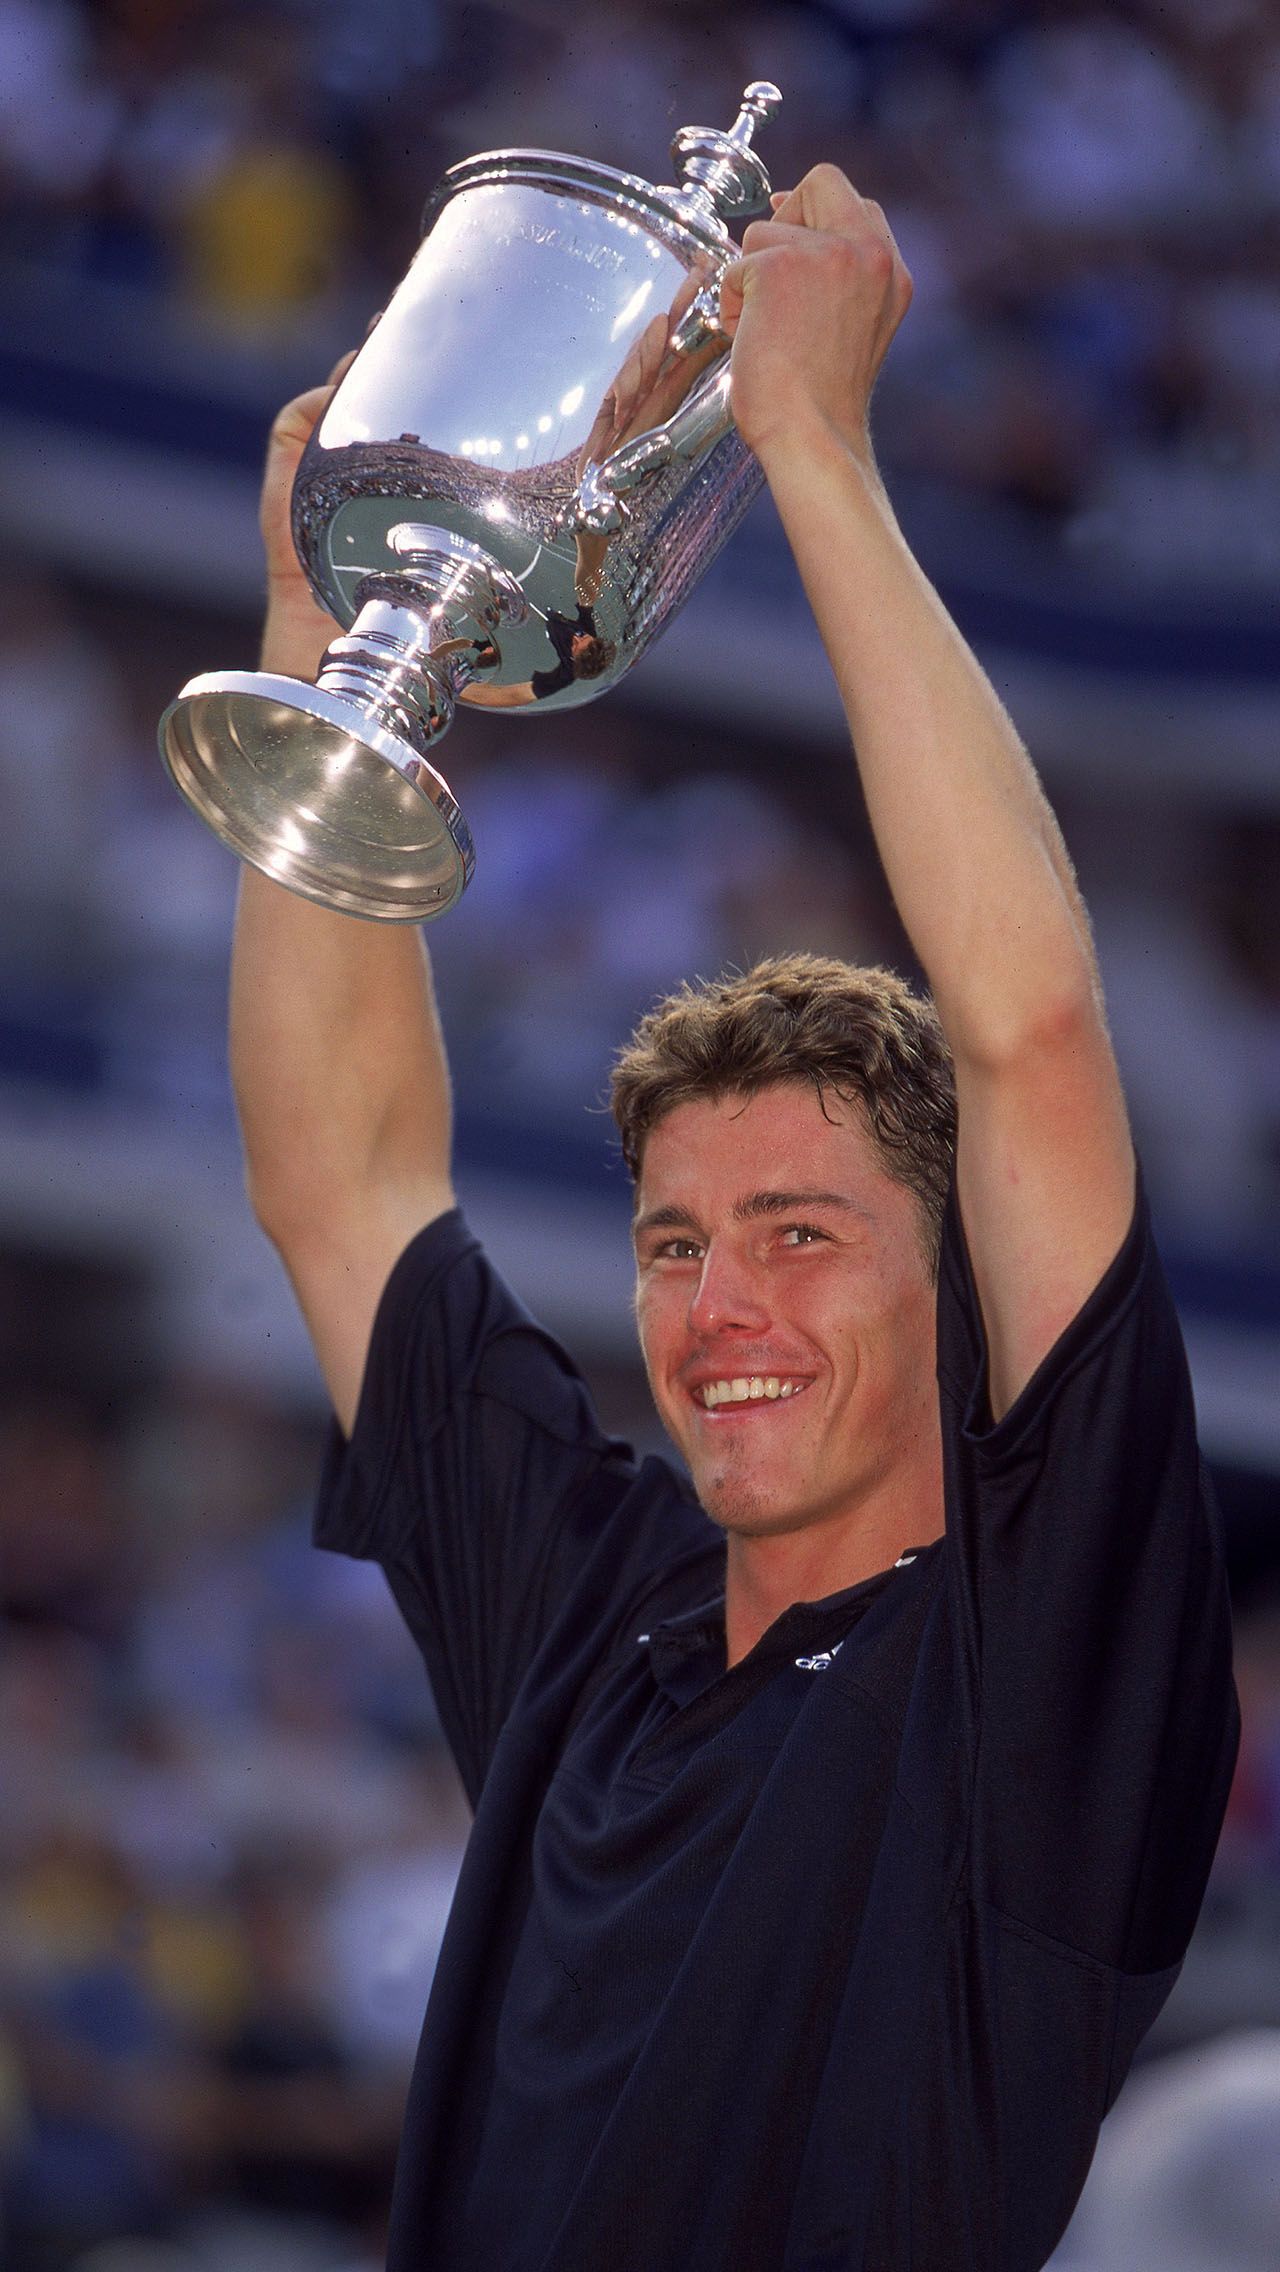 Он был установлен в далёком 2000 году, когда Марат Сафин и Евгений Кафельников завоевали девять титулов. Семь из них, в том числе US Open, взял Сафин.